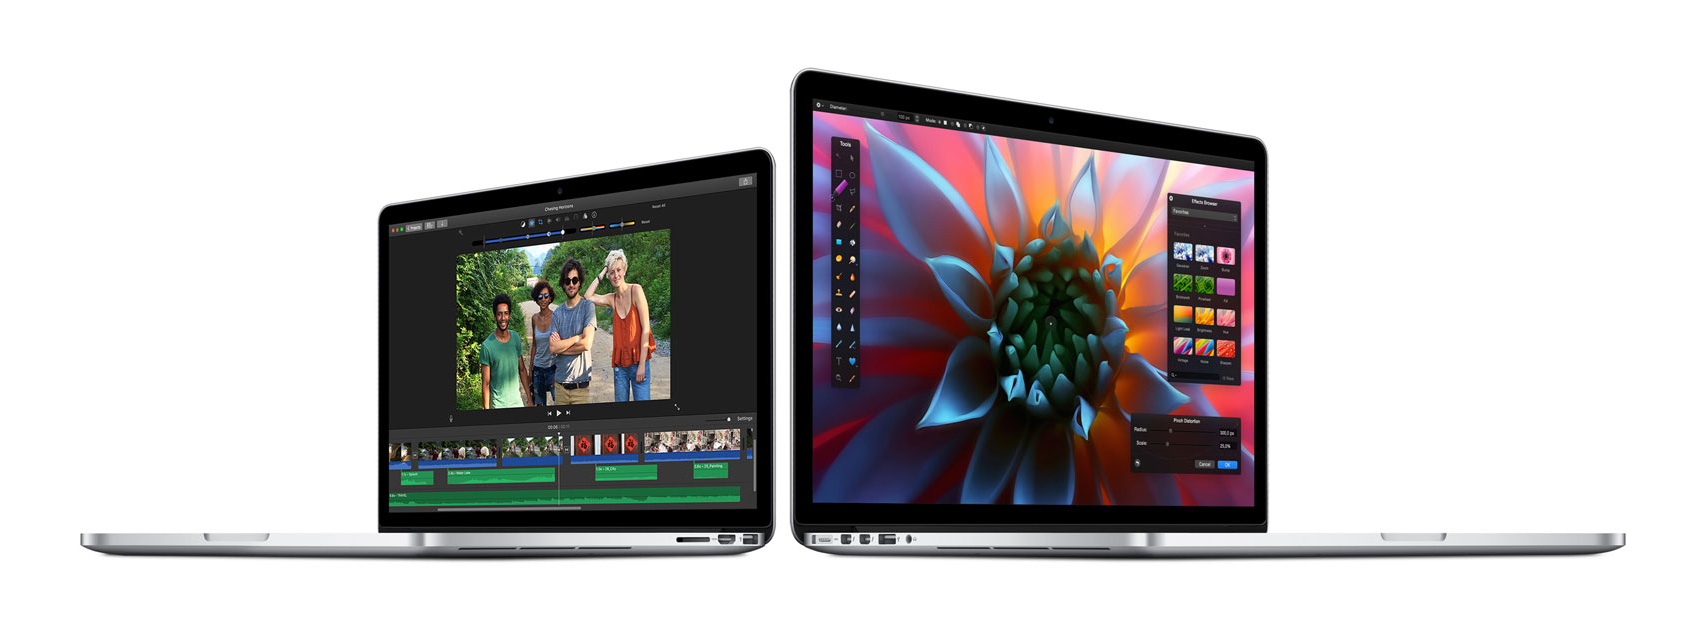 NVIDIA đang tuyển dụng nhân viên để phát triển "sản phẩm Apple mới mang tính cách mạng"